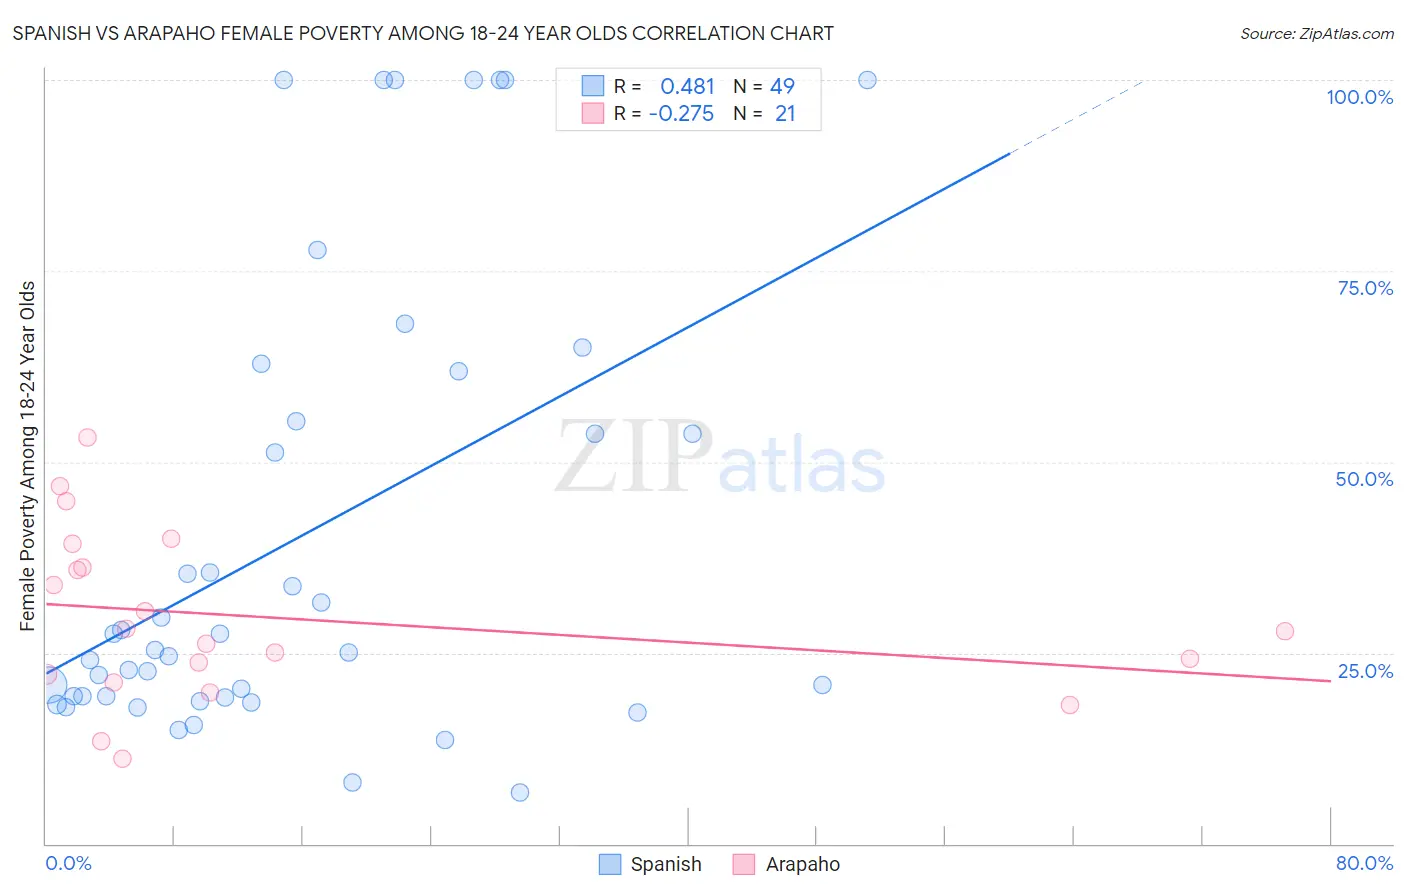 Spanish vs Arapaho Female Poverty Among 18-24 Year Olds